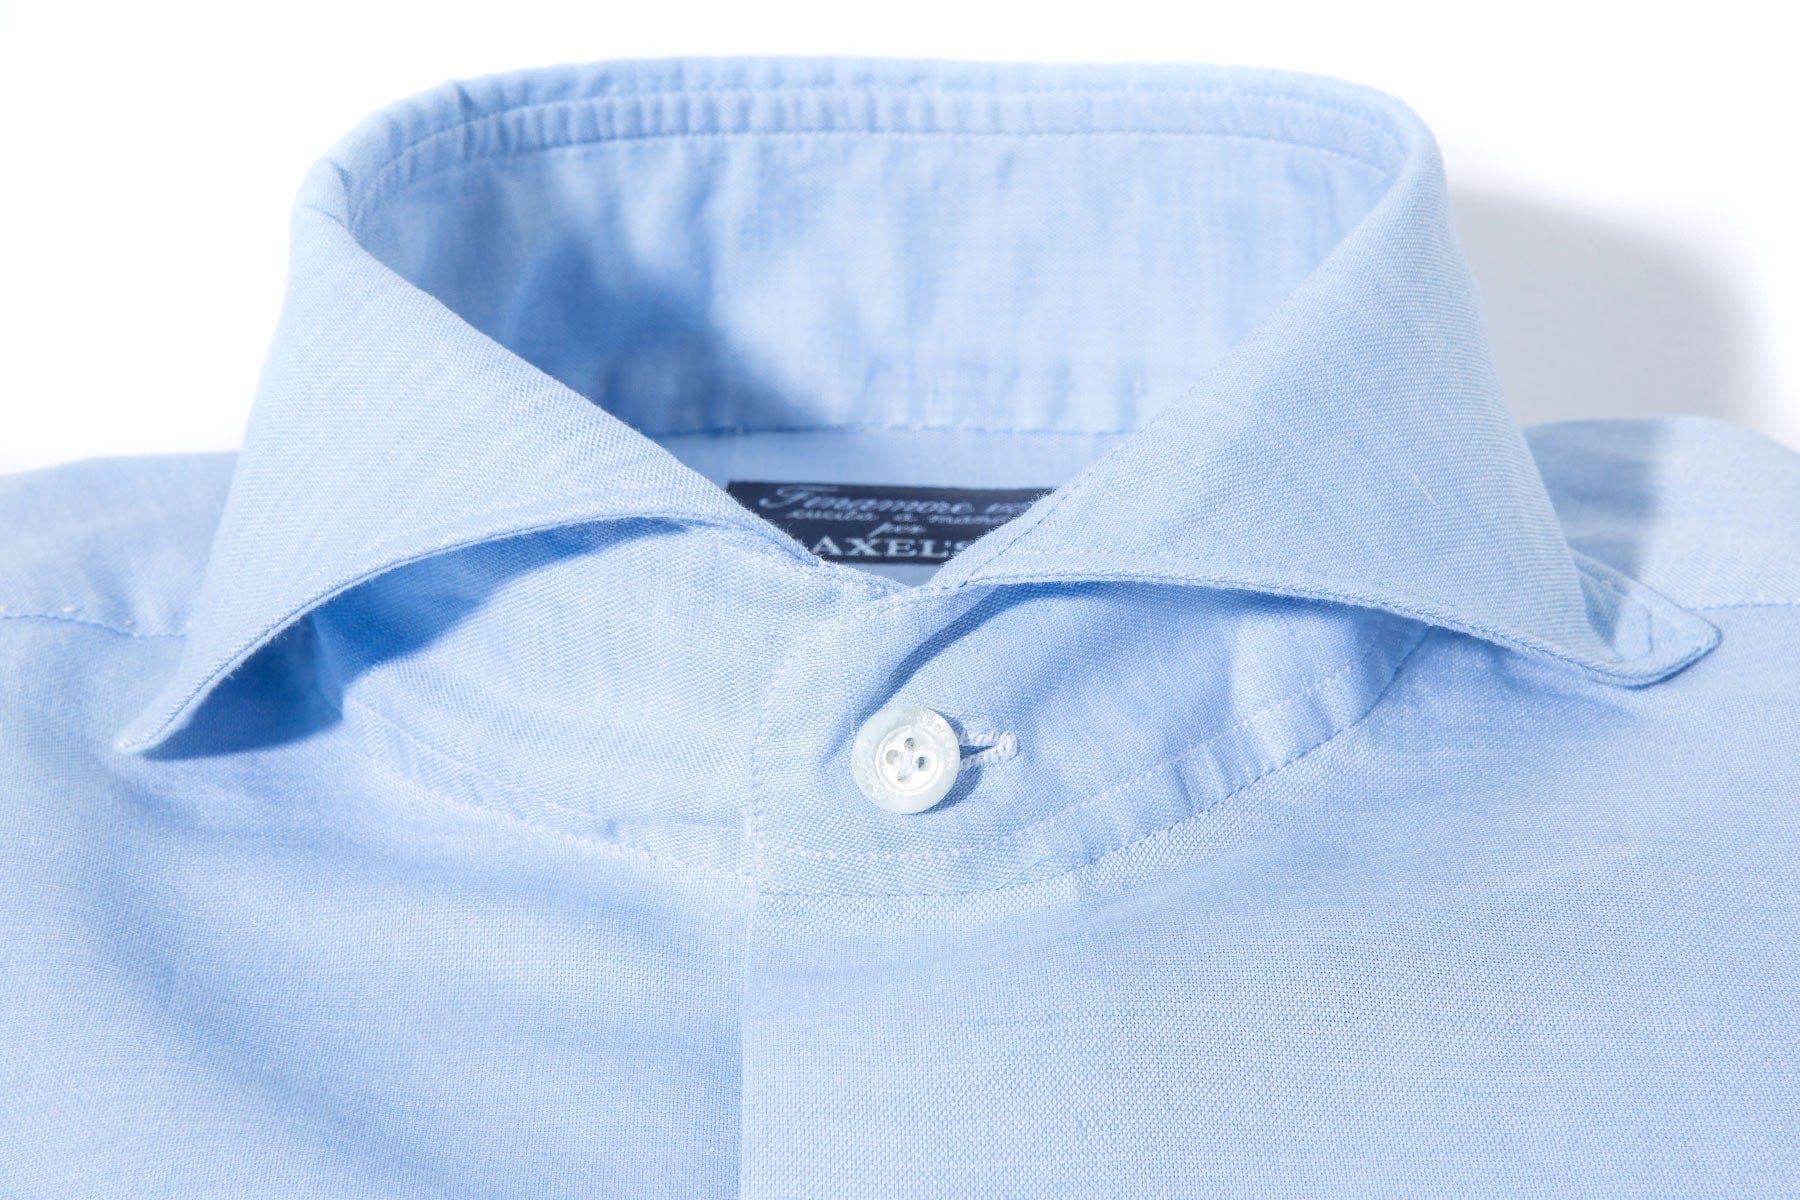 Andorra Carlo Riva Cotton Linen Shirt In Sky Blue - AXEL'S